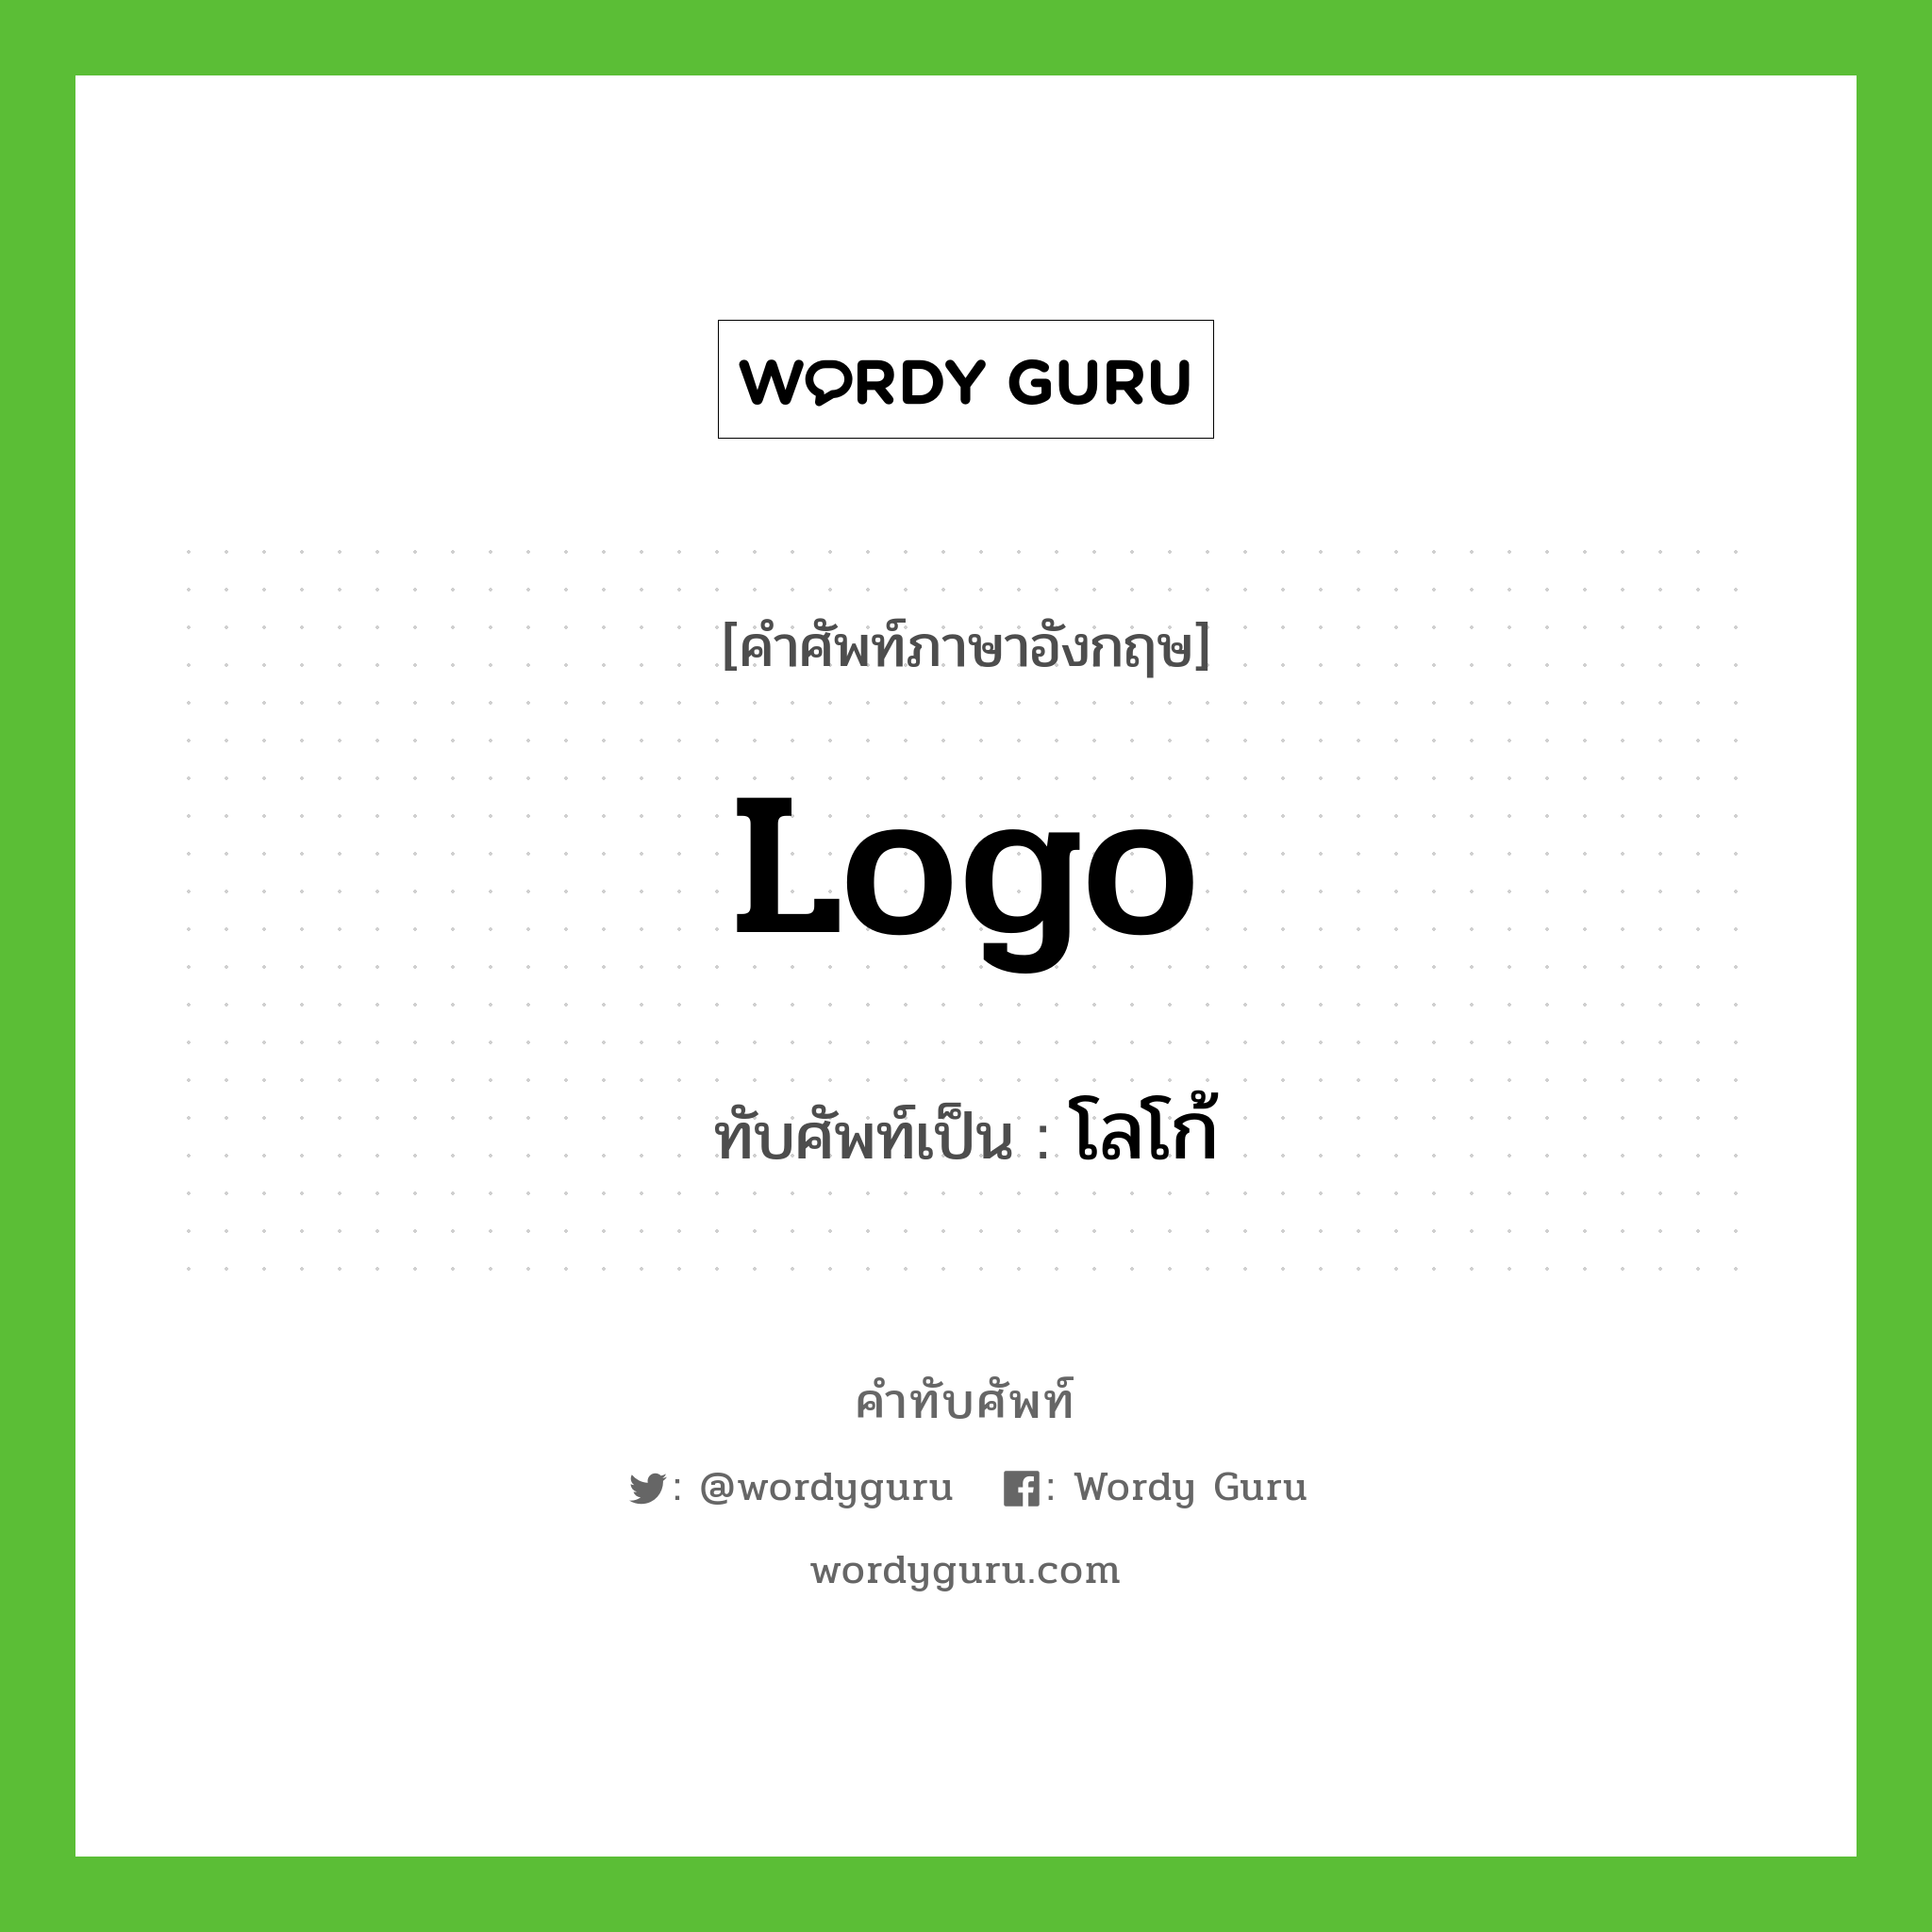 logo เขียนเป็นคำไทยว่าอะไร?, คำศัพท์ภาษาอังกฤษ logo ทับศัพท์เป็น โลโก้